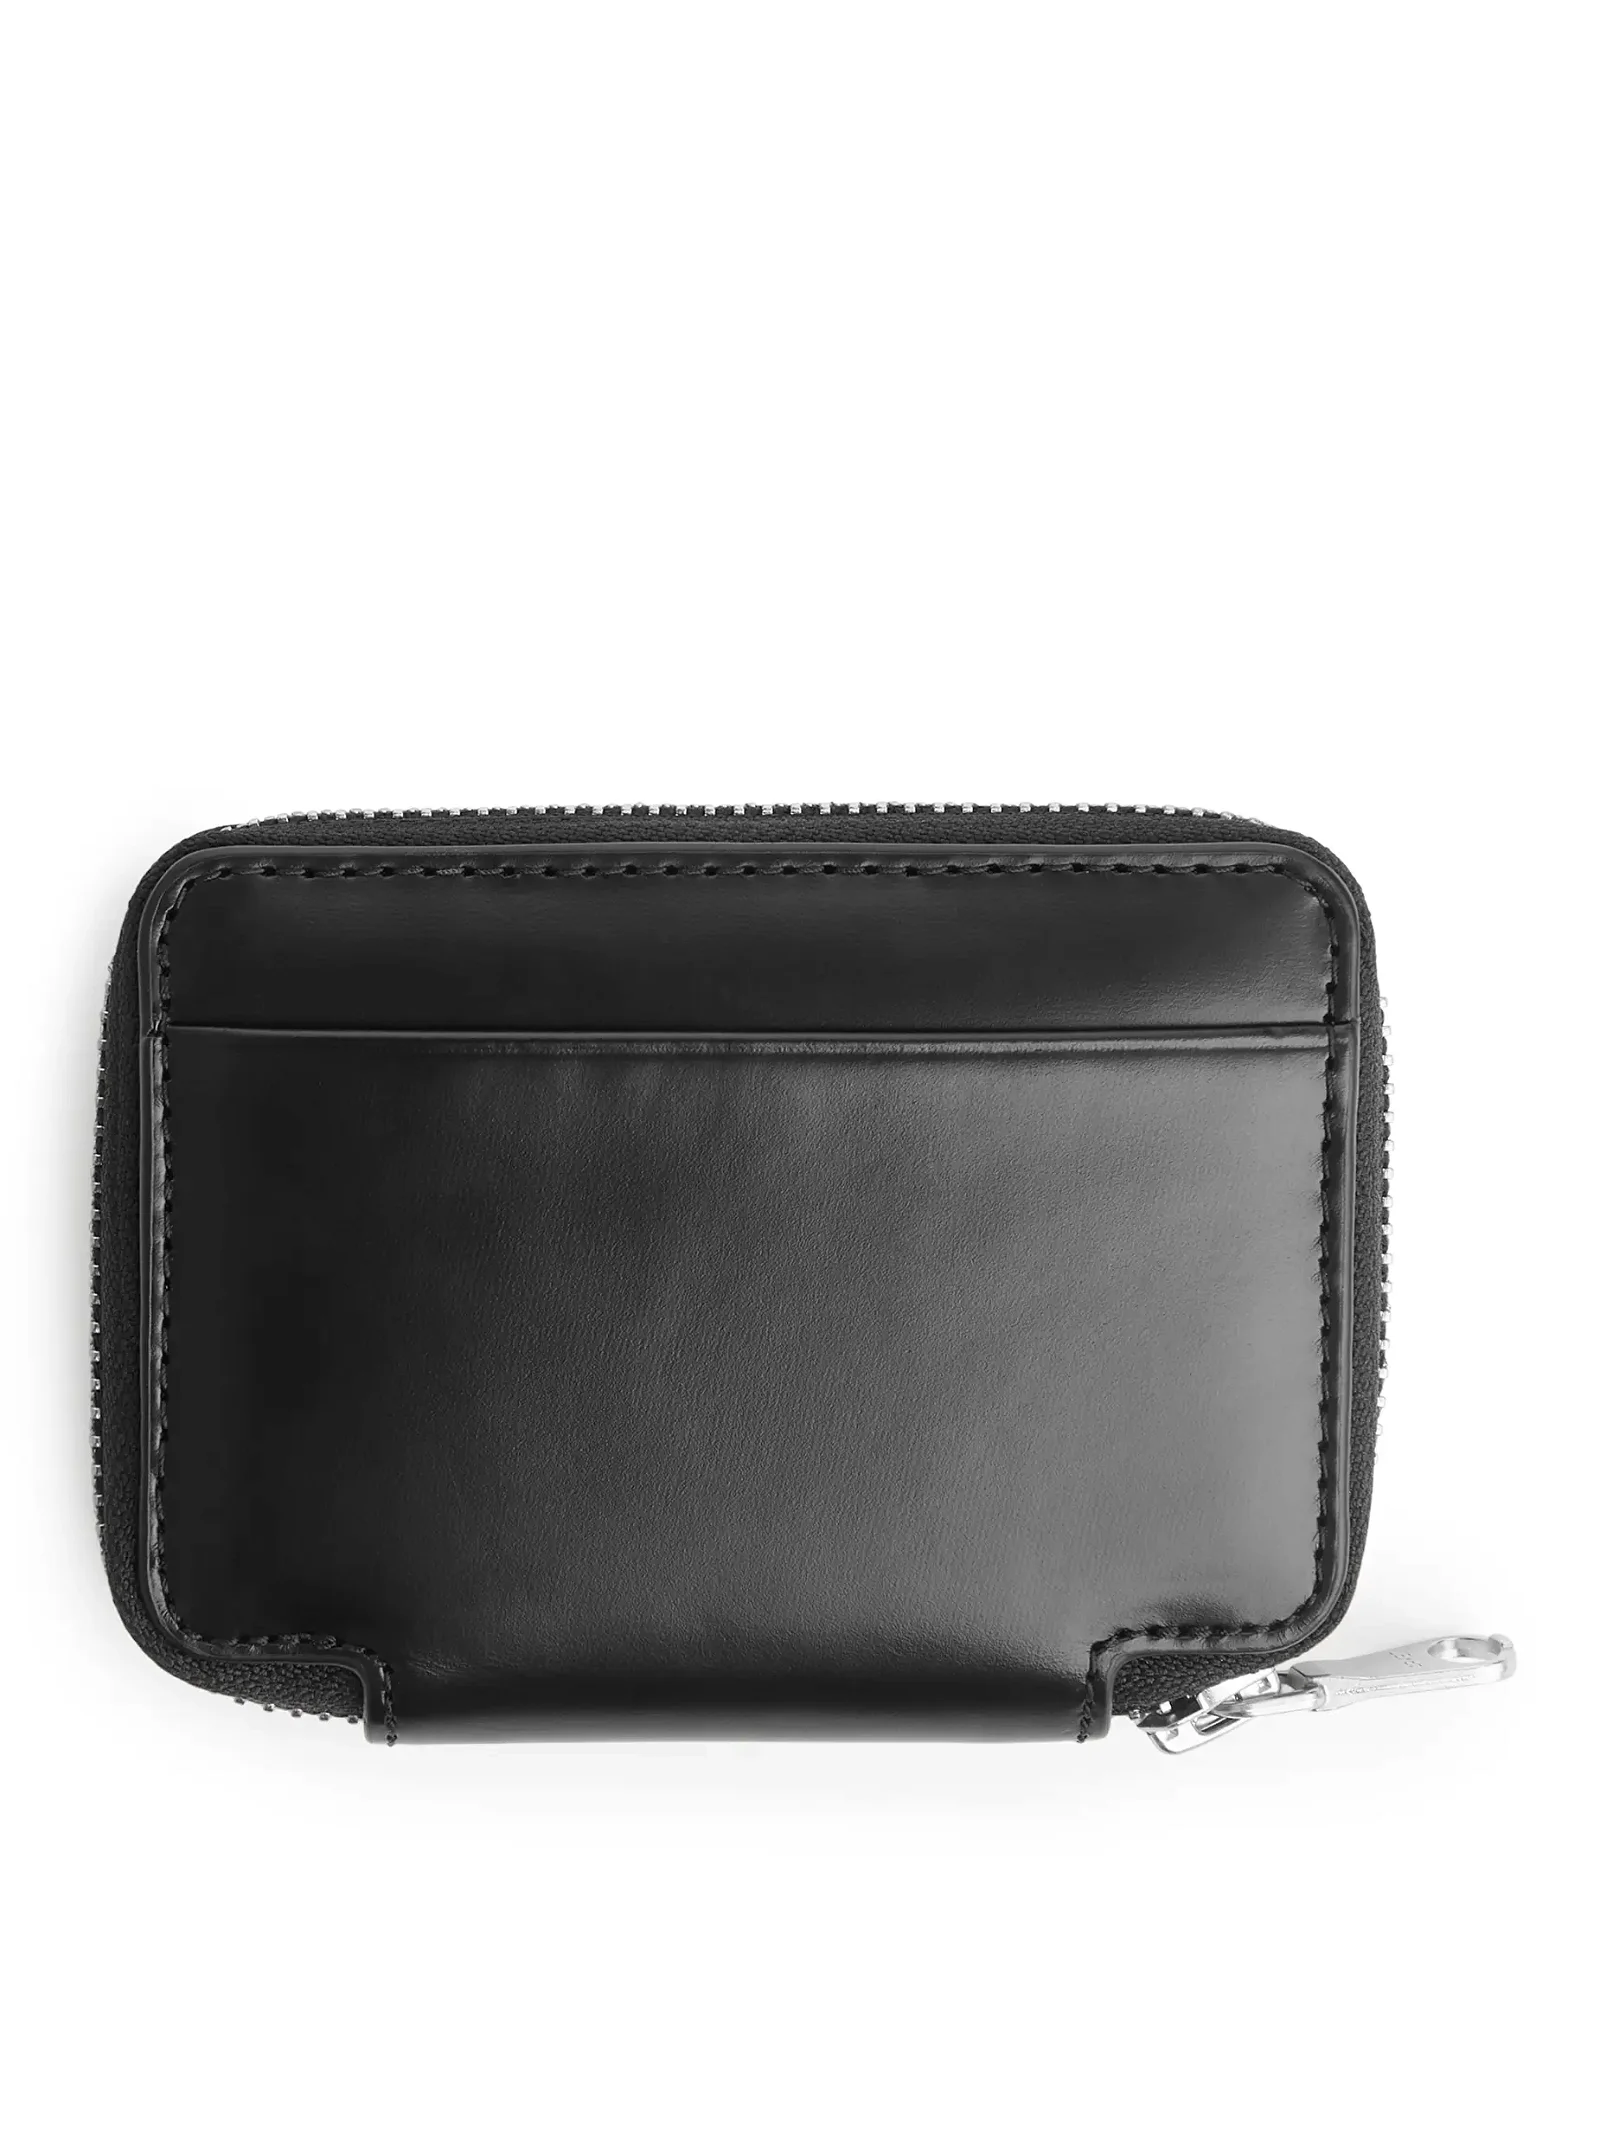 ARKET Leather Zip Wallet in Black | Endource